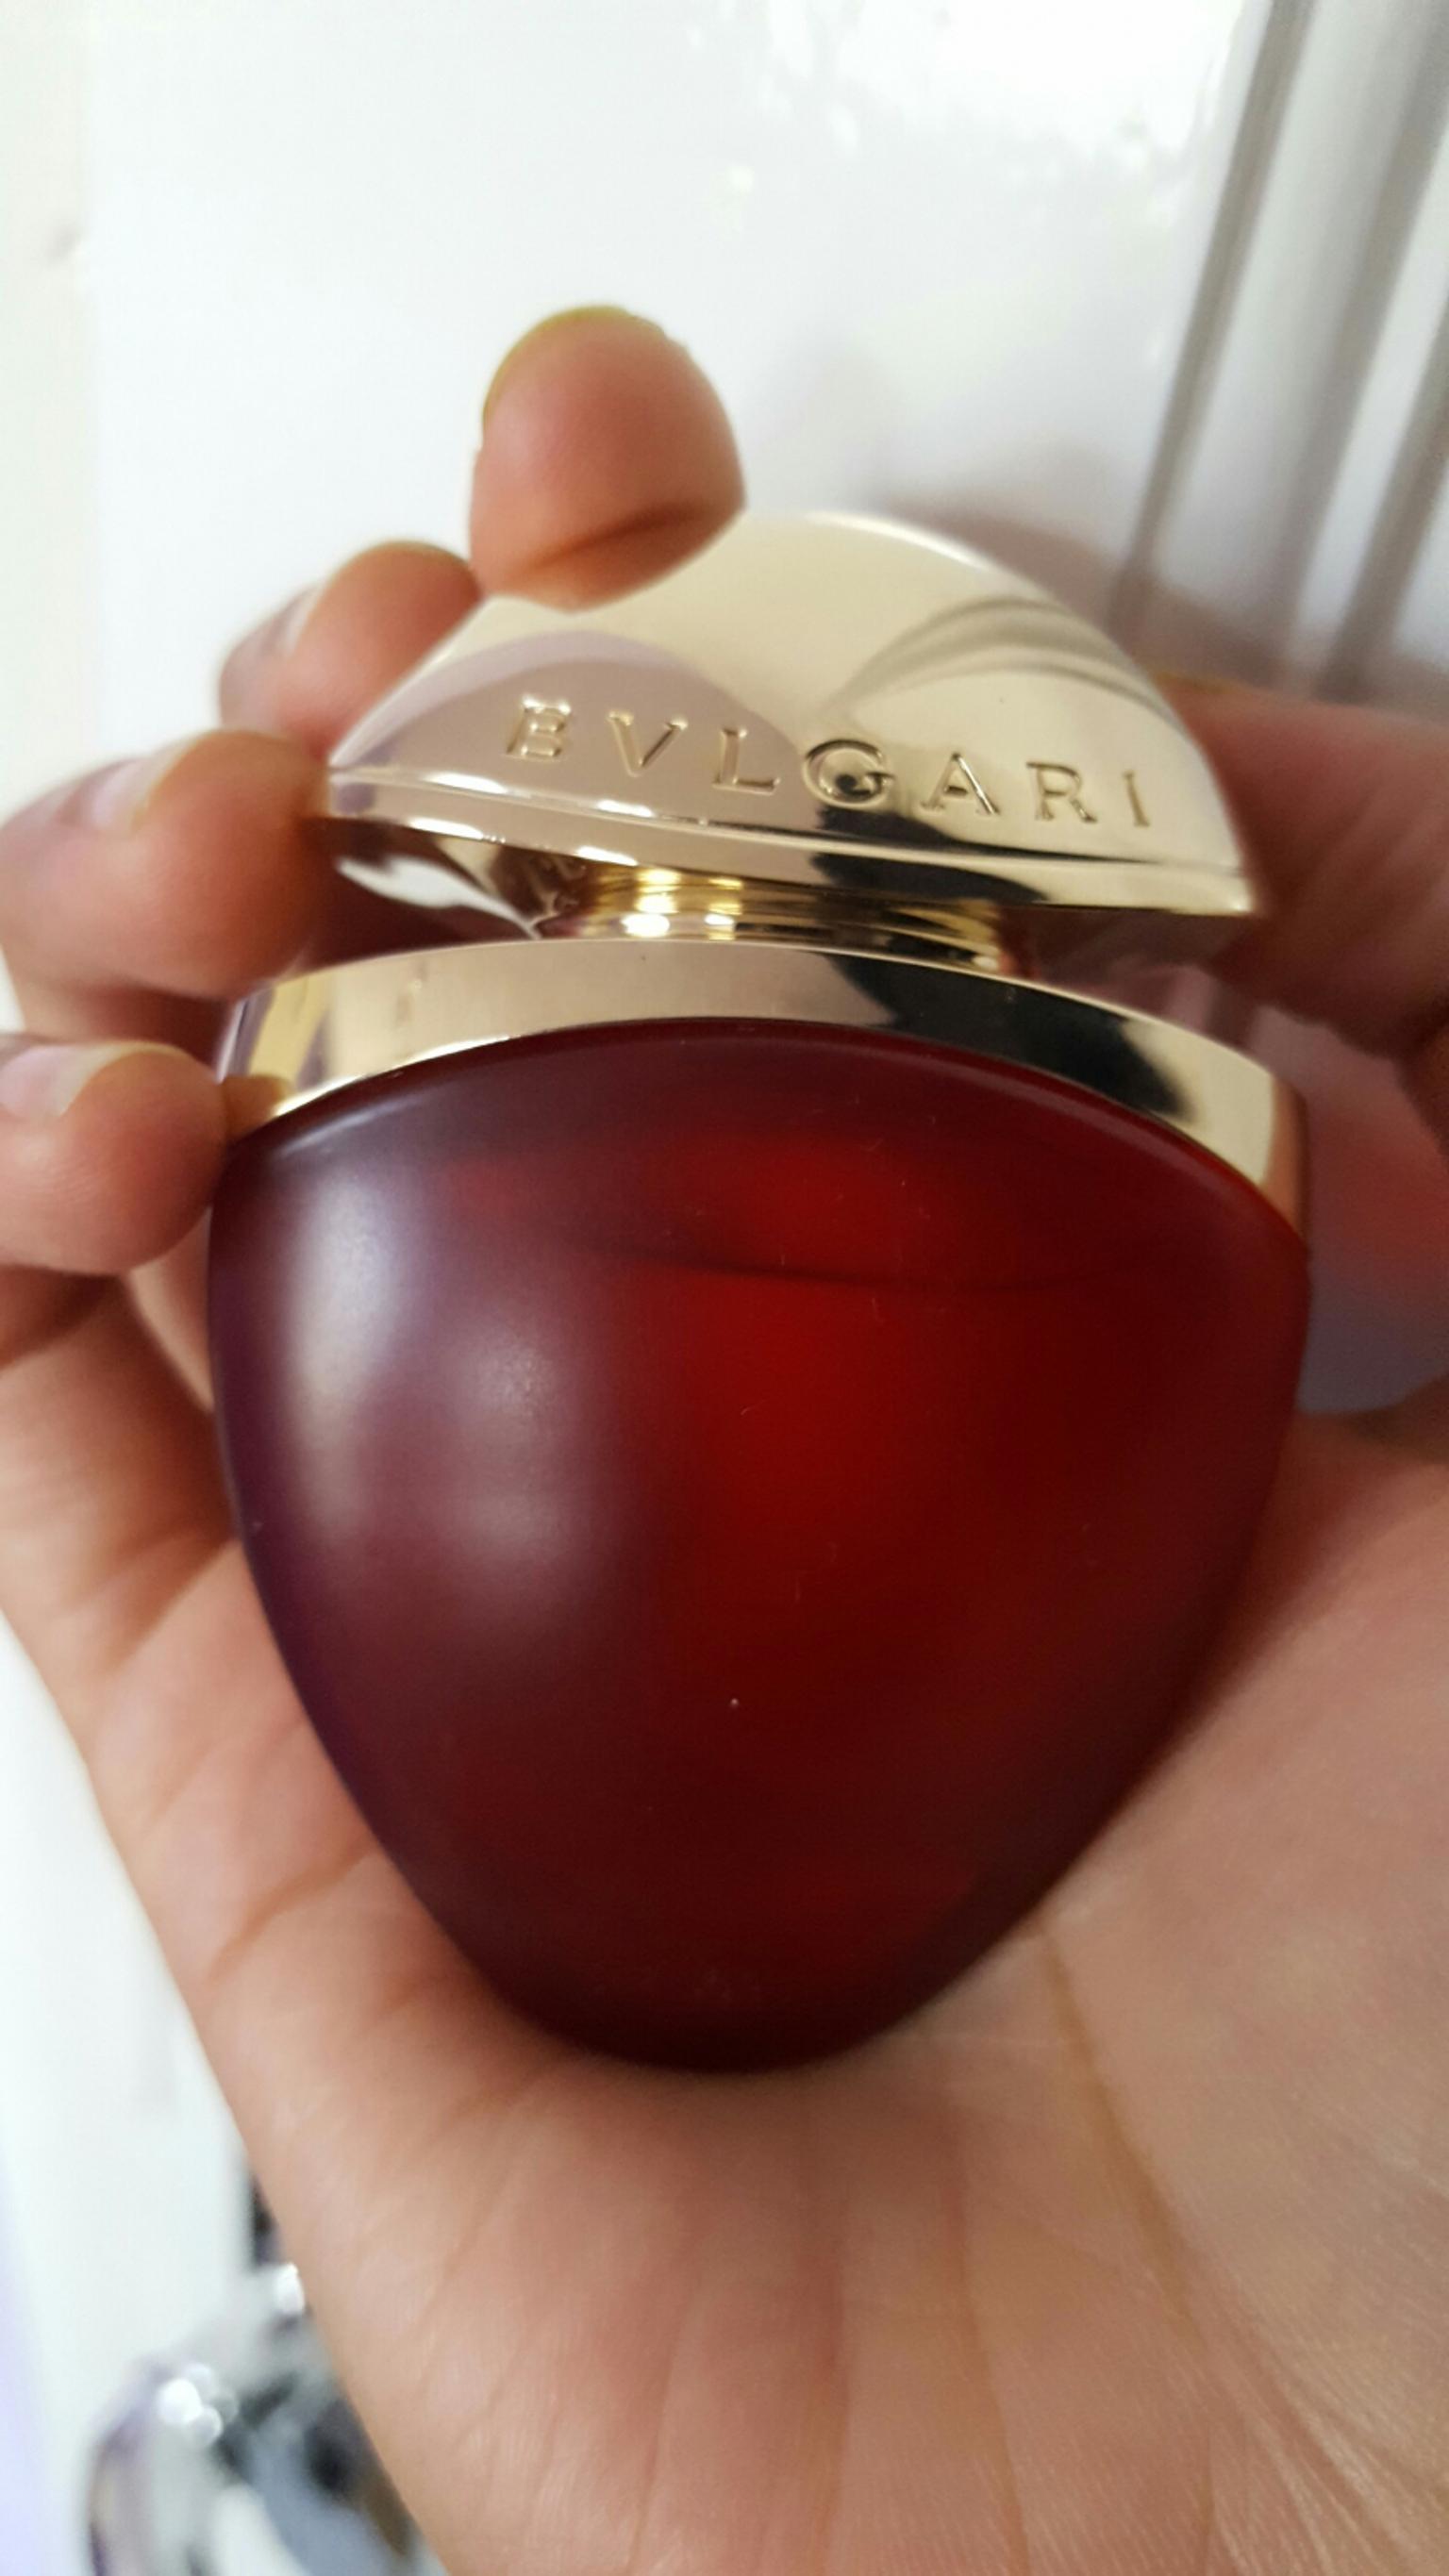 bvlgari perfume 15ml price